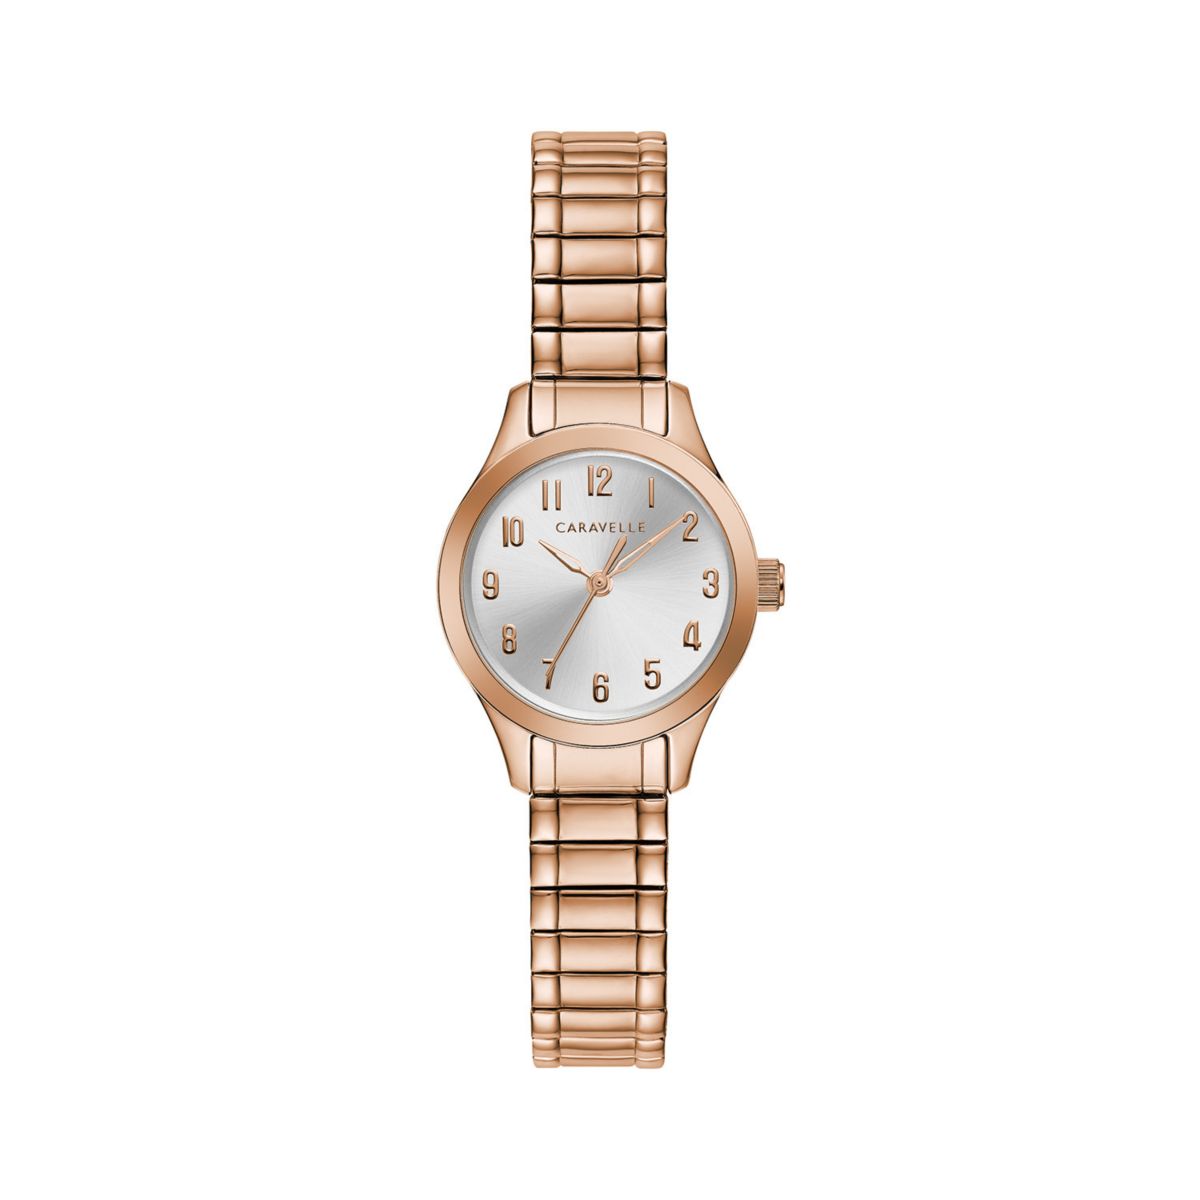 Женские часы Caravelle by Bulova Expansion цвета розового золота - 44L254 Caravelle